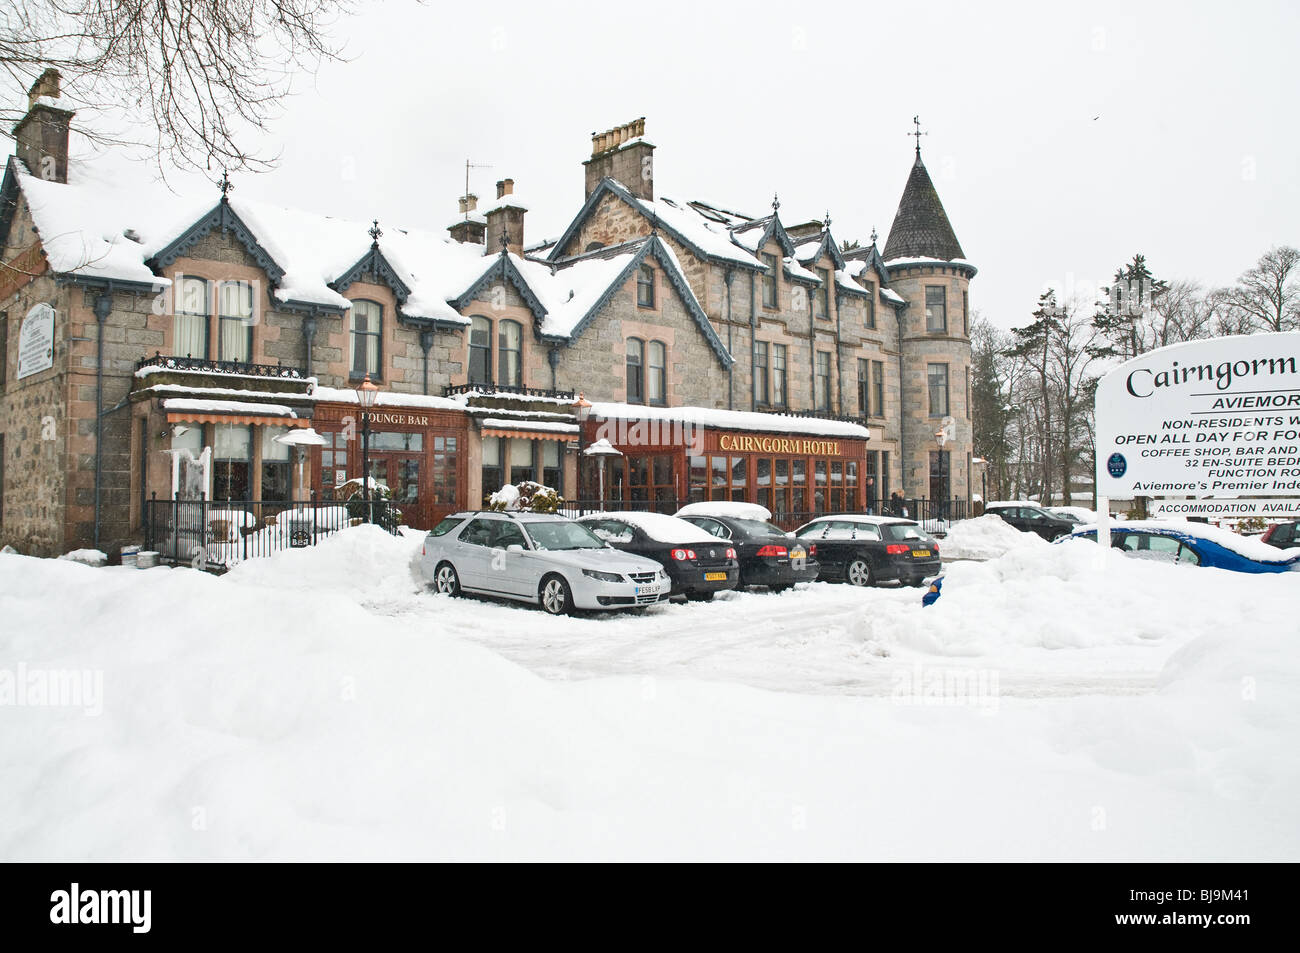 Cairngorm Aviemore AVIEMORE hôtel dh Bâtiment INVERNESSSHIRE hiver neige ski vacances Ecosse highlands écossais uk Banque D'Images